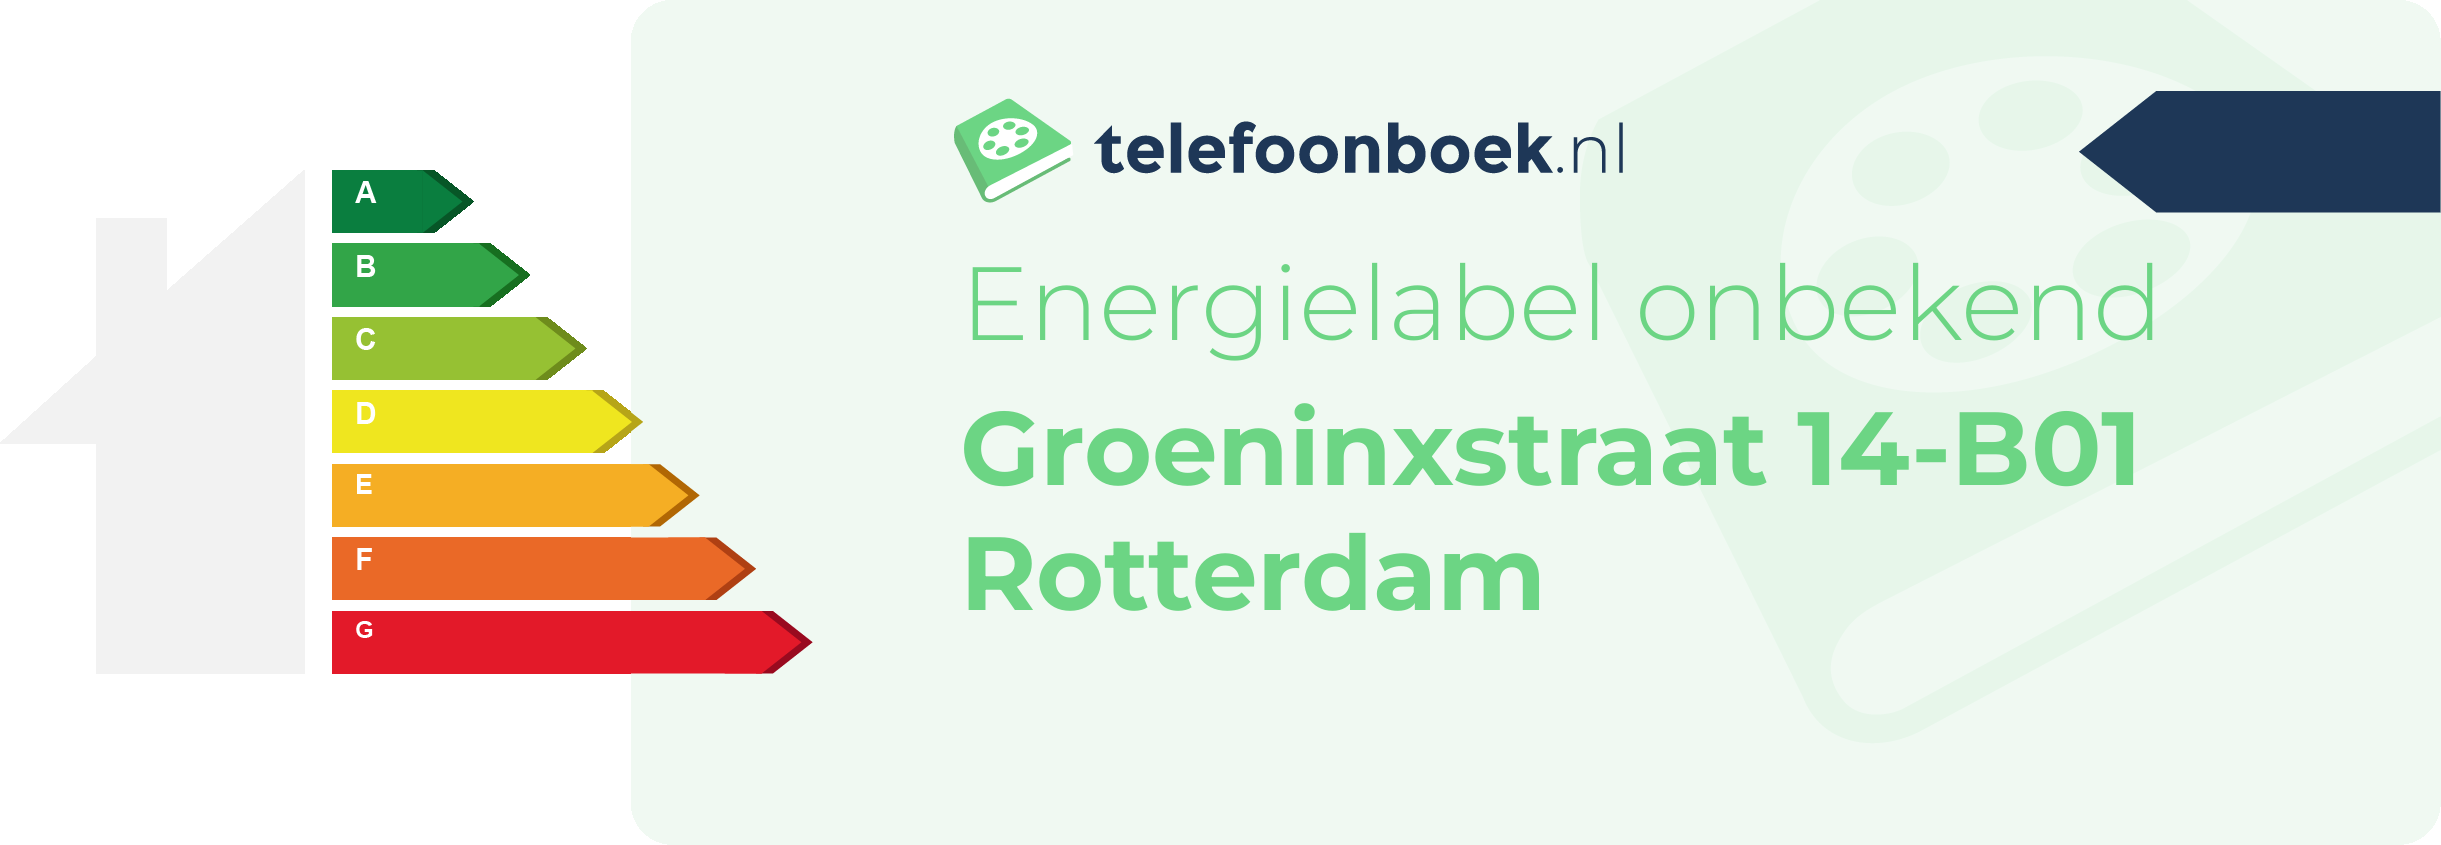 Energielabel Groeninxstraat 14-B01 Rotterdam